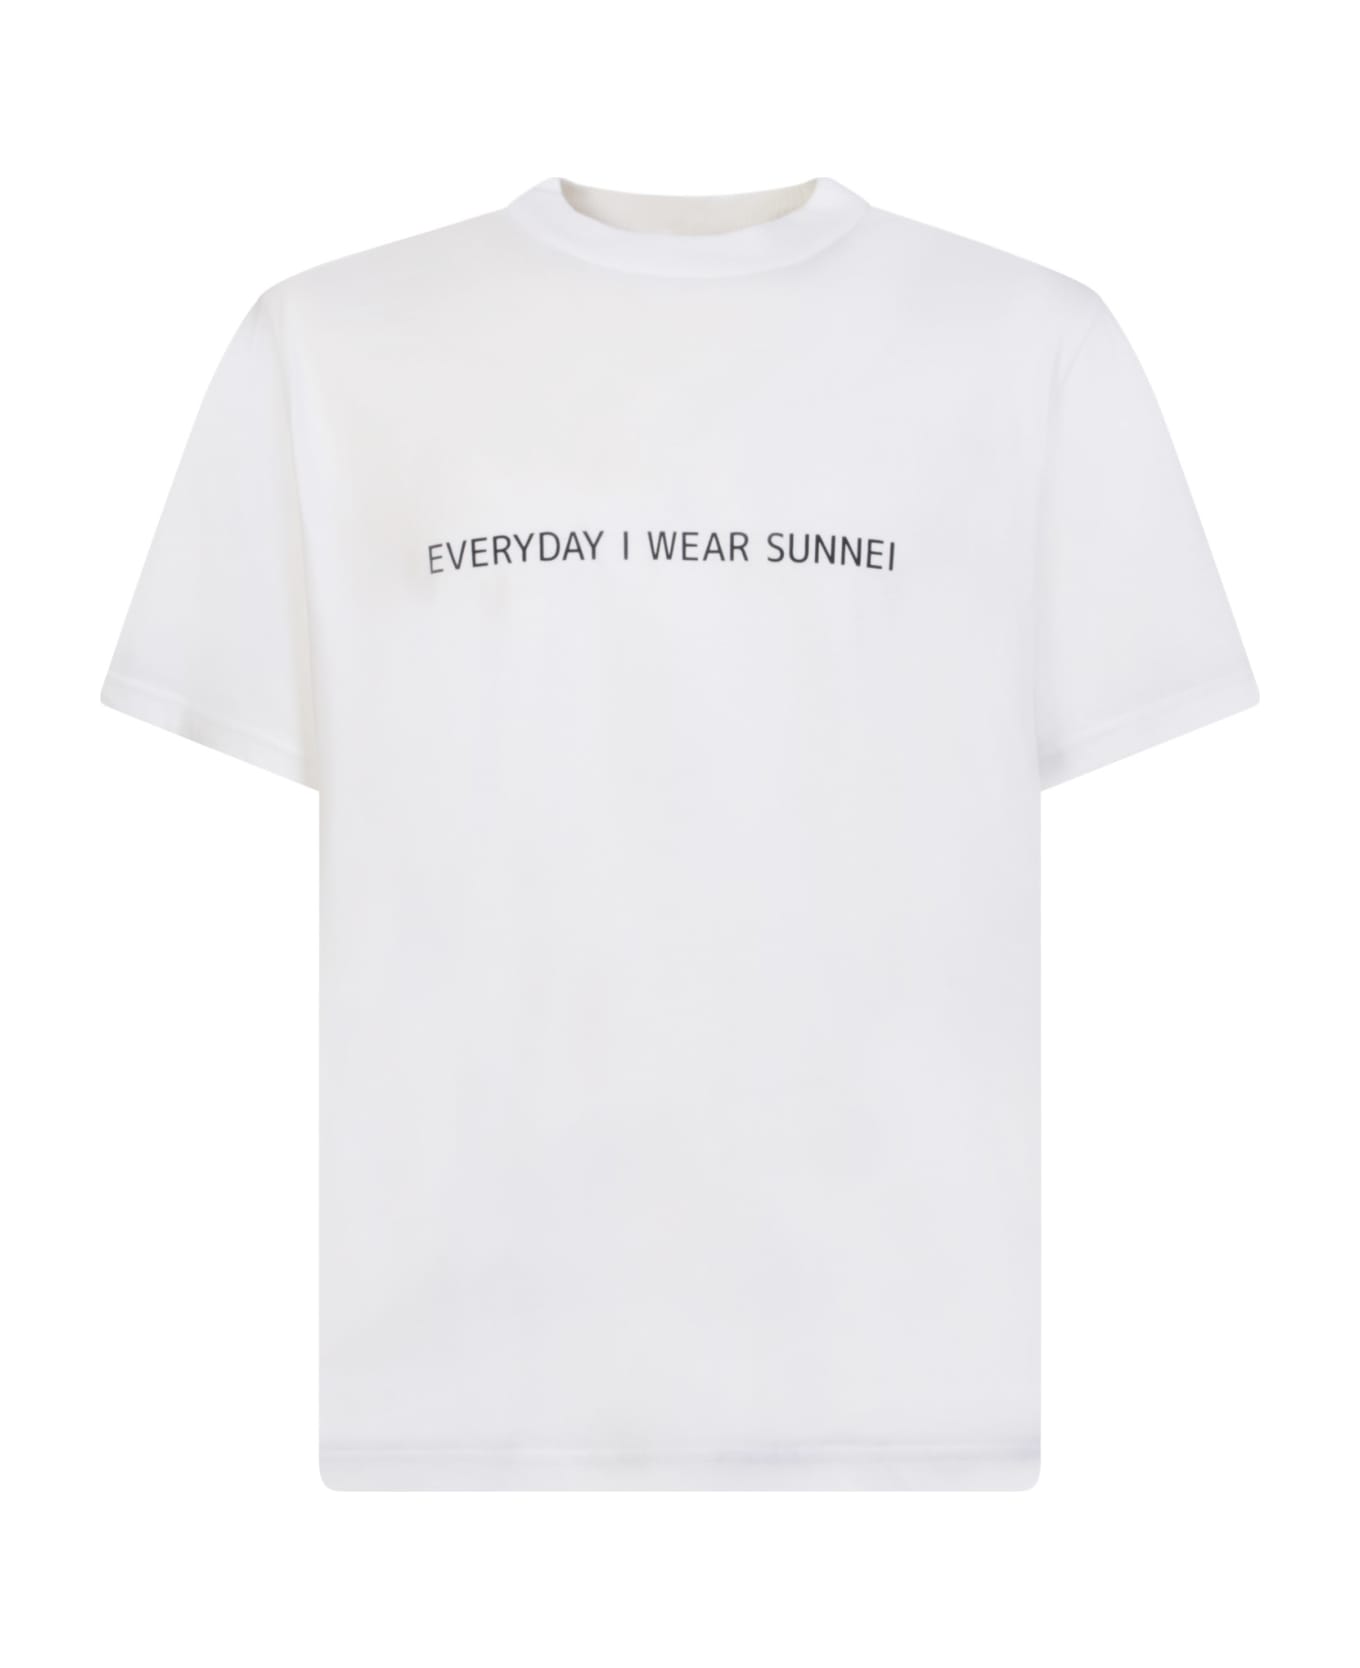 Sunnei T-shirt Everyday I Wear Sunnei"" - White